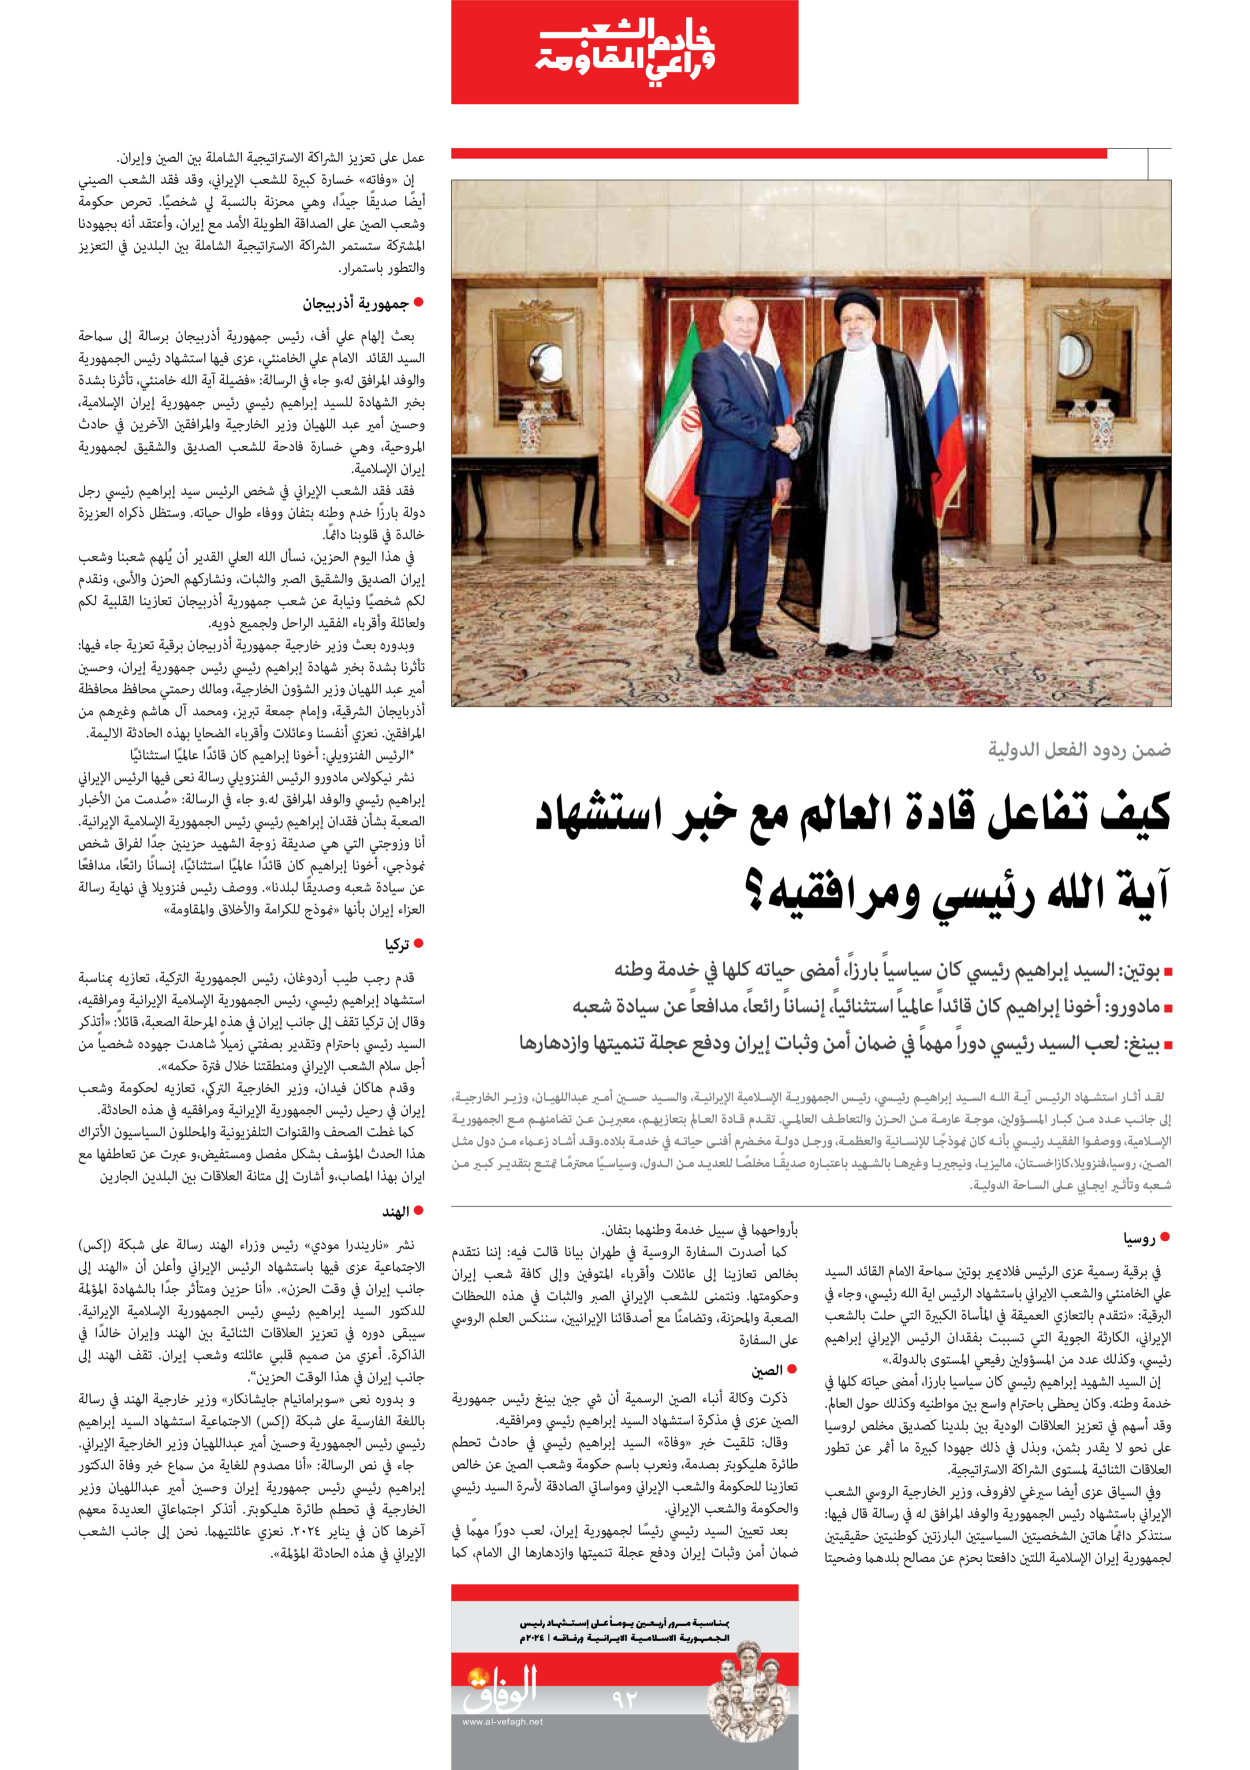 صحیفة ایران الدولیة الوفاق - ملحق ویژه نامه چهلم شهید رییسی - ٢٩ يونيو ٢٠٢٤ - الصفحة ۹۱